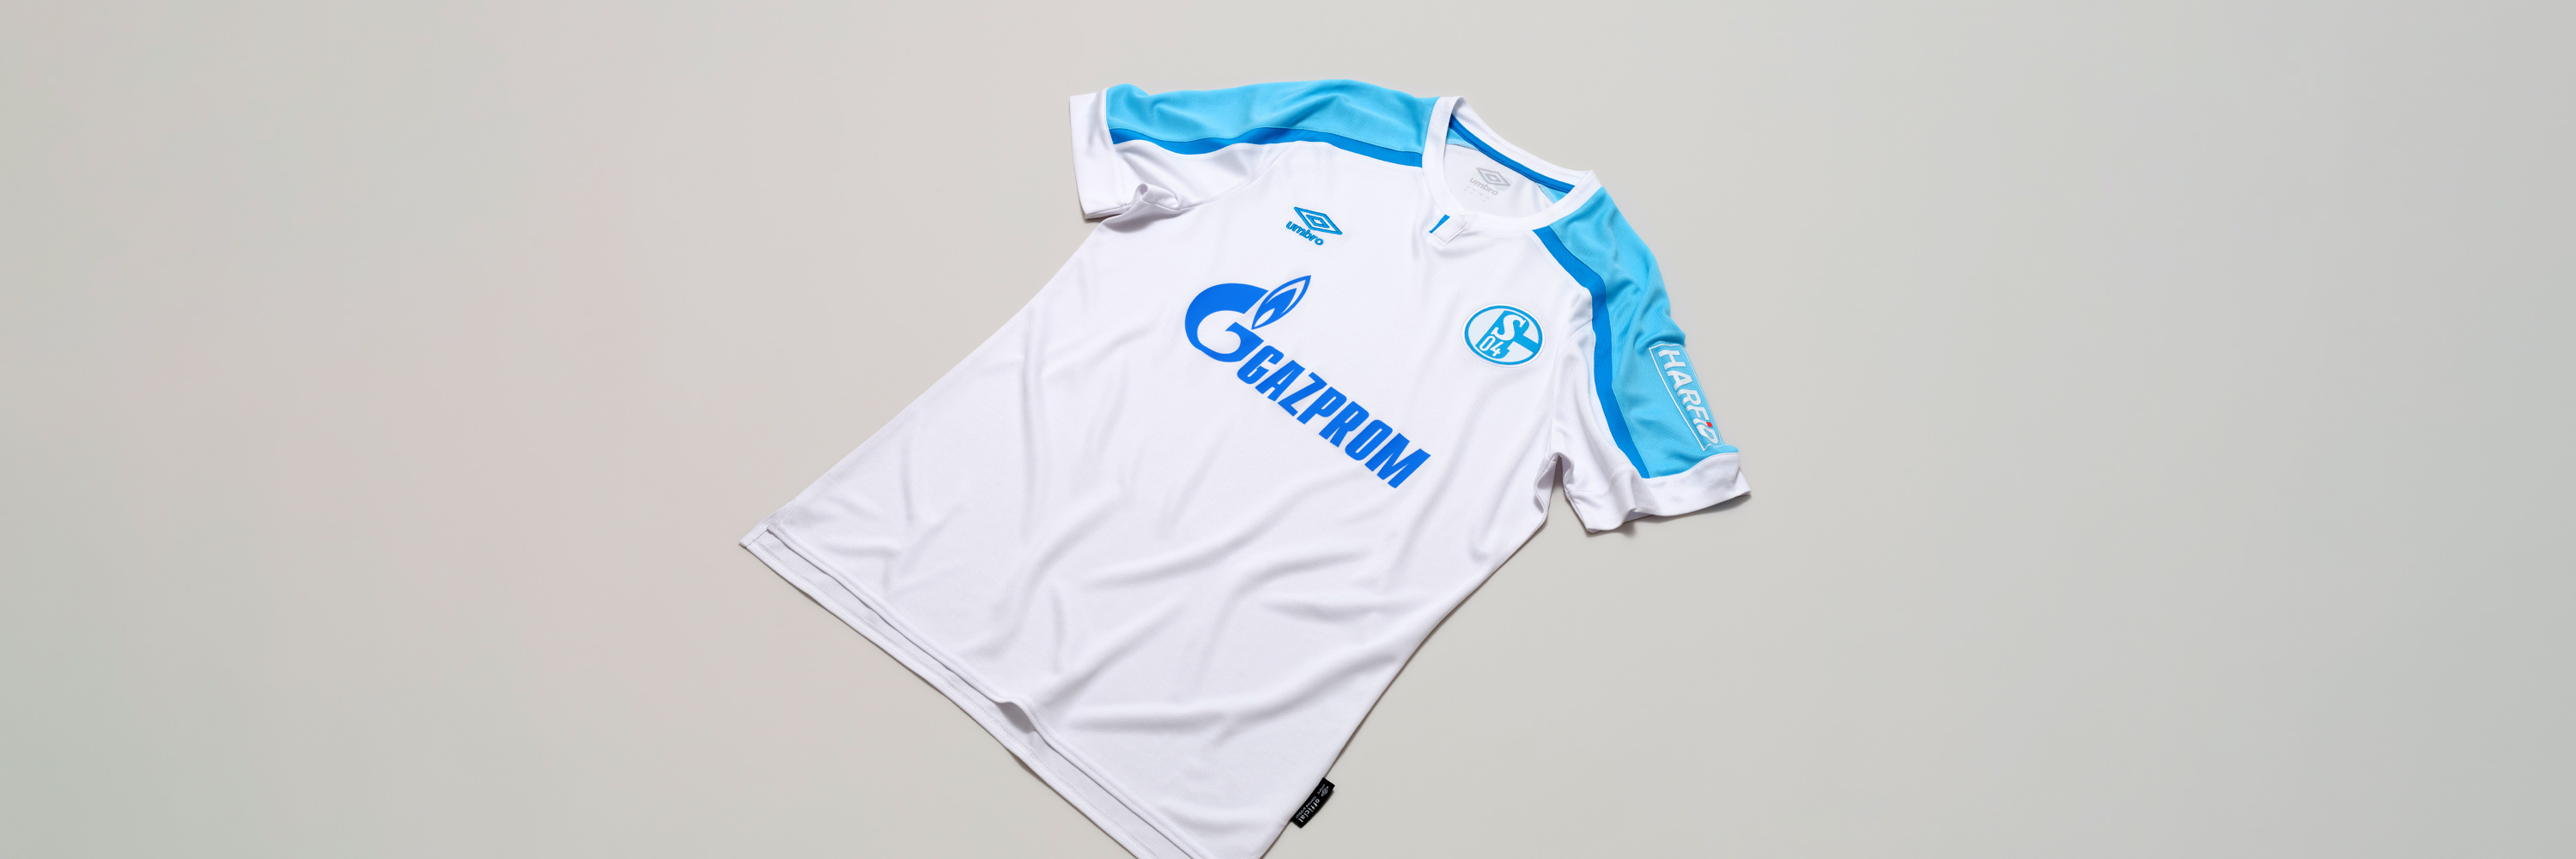 Umbro Schalke 04 Warm Up Jersey blau S04 Aufwärm Trikot Fan Shirt Gr S-3XL 